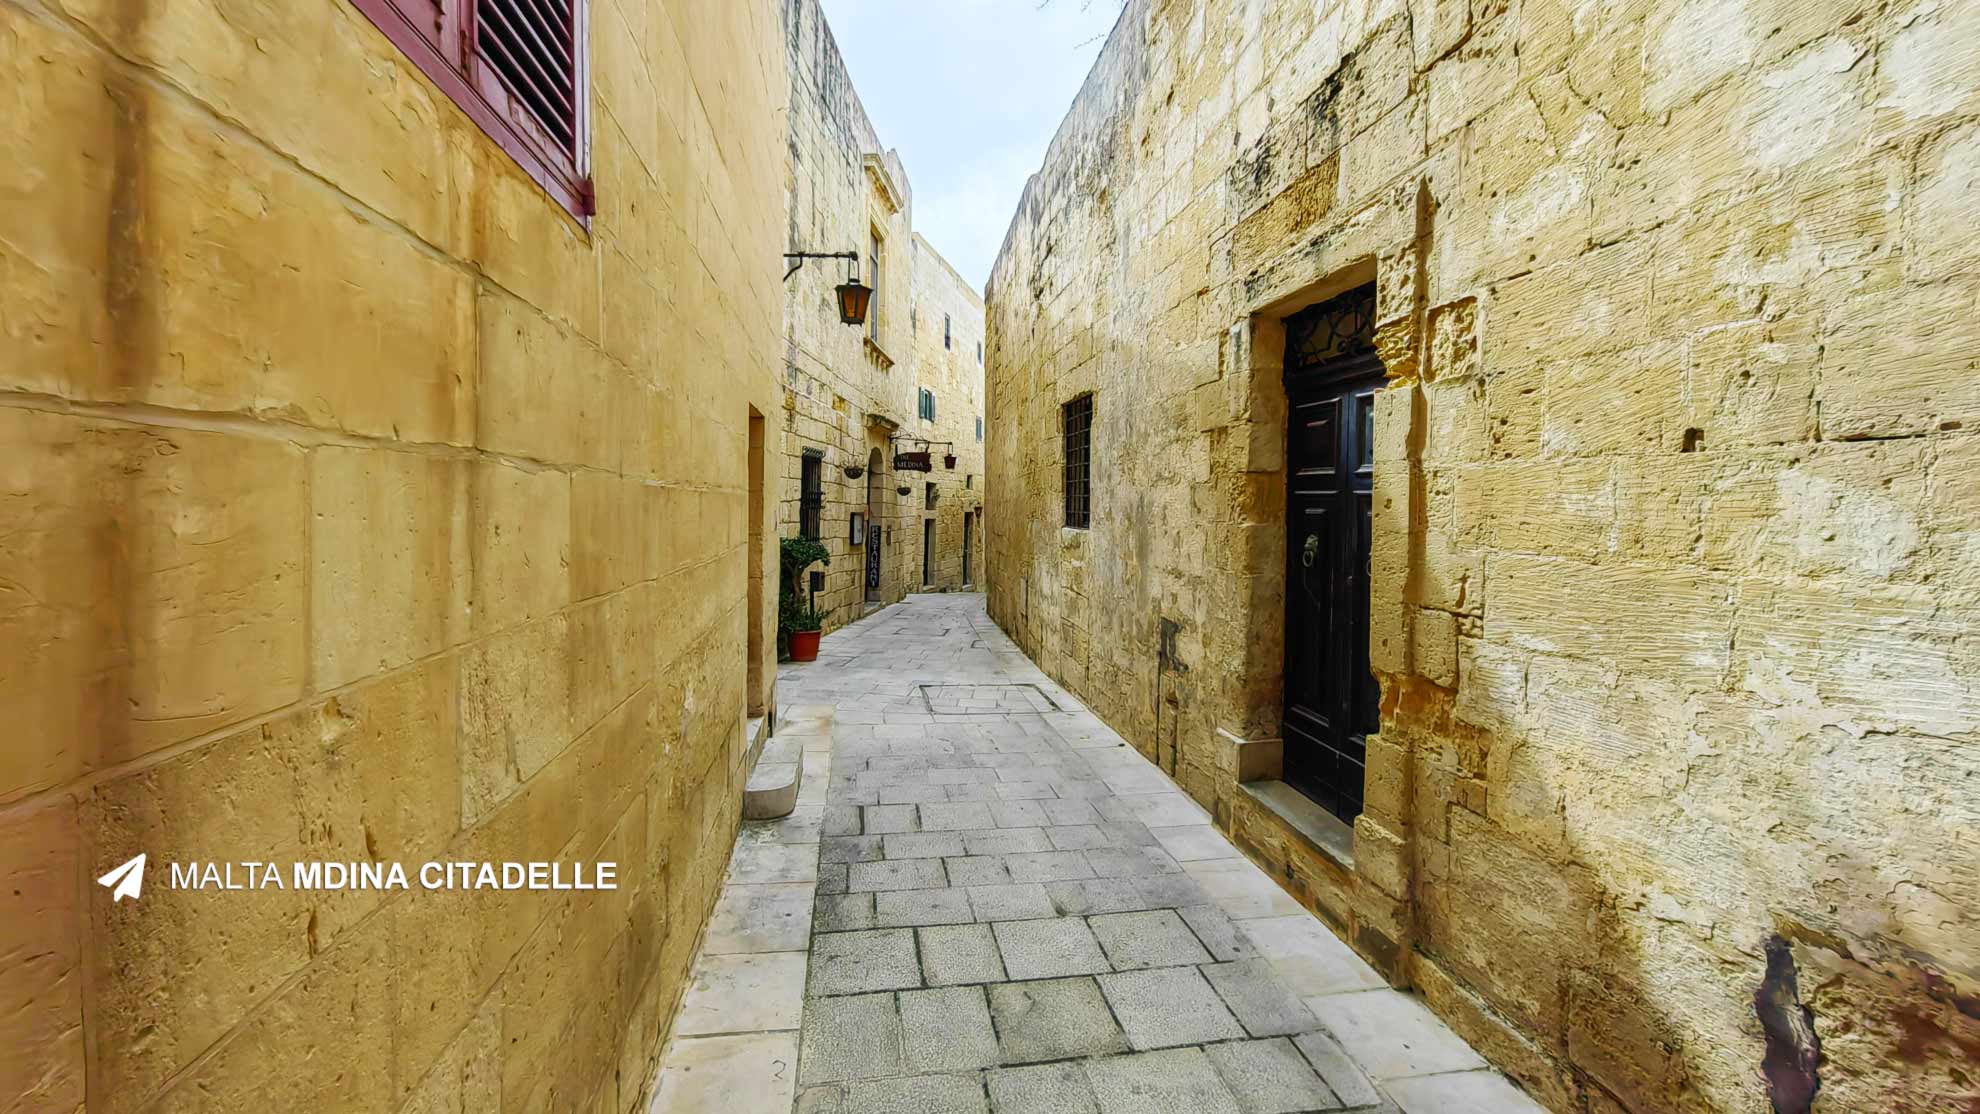 Mdina citadelle Malta